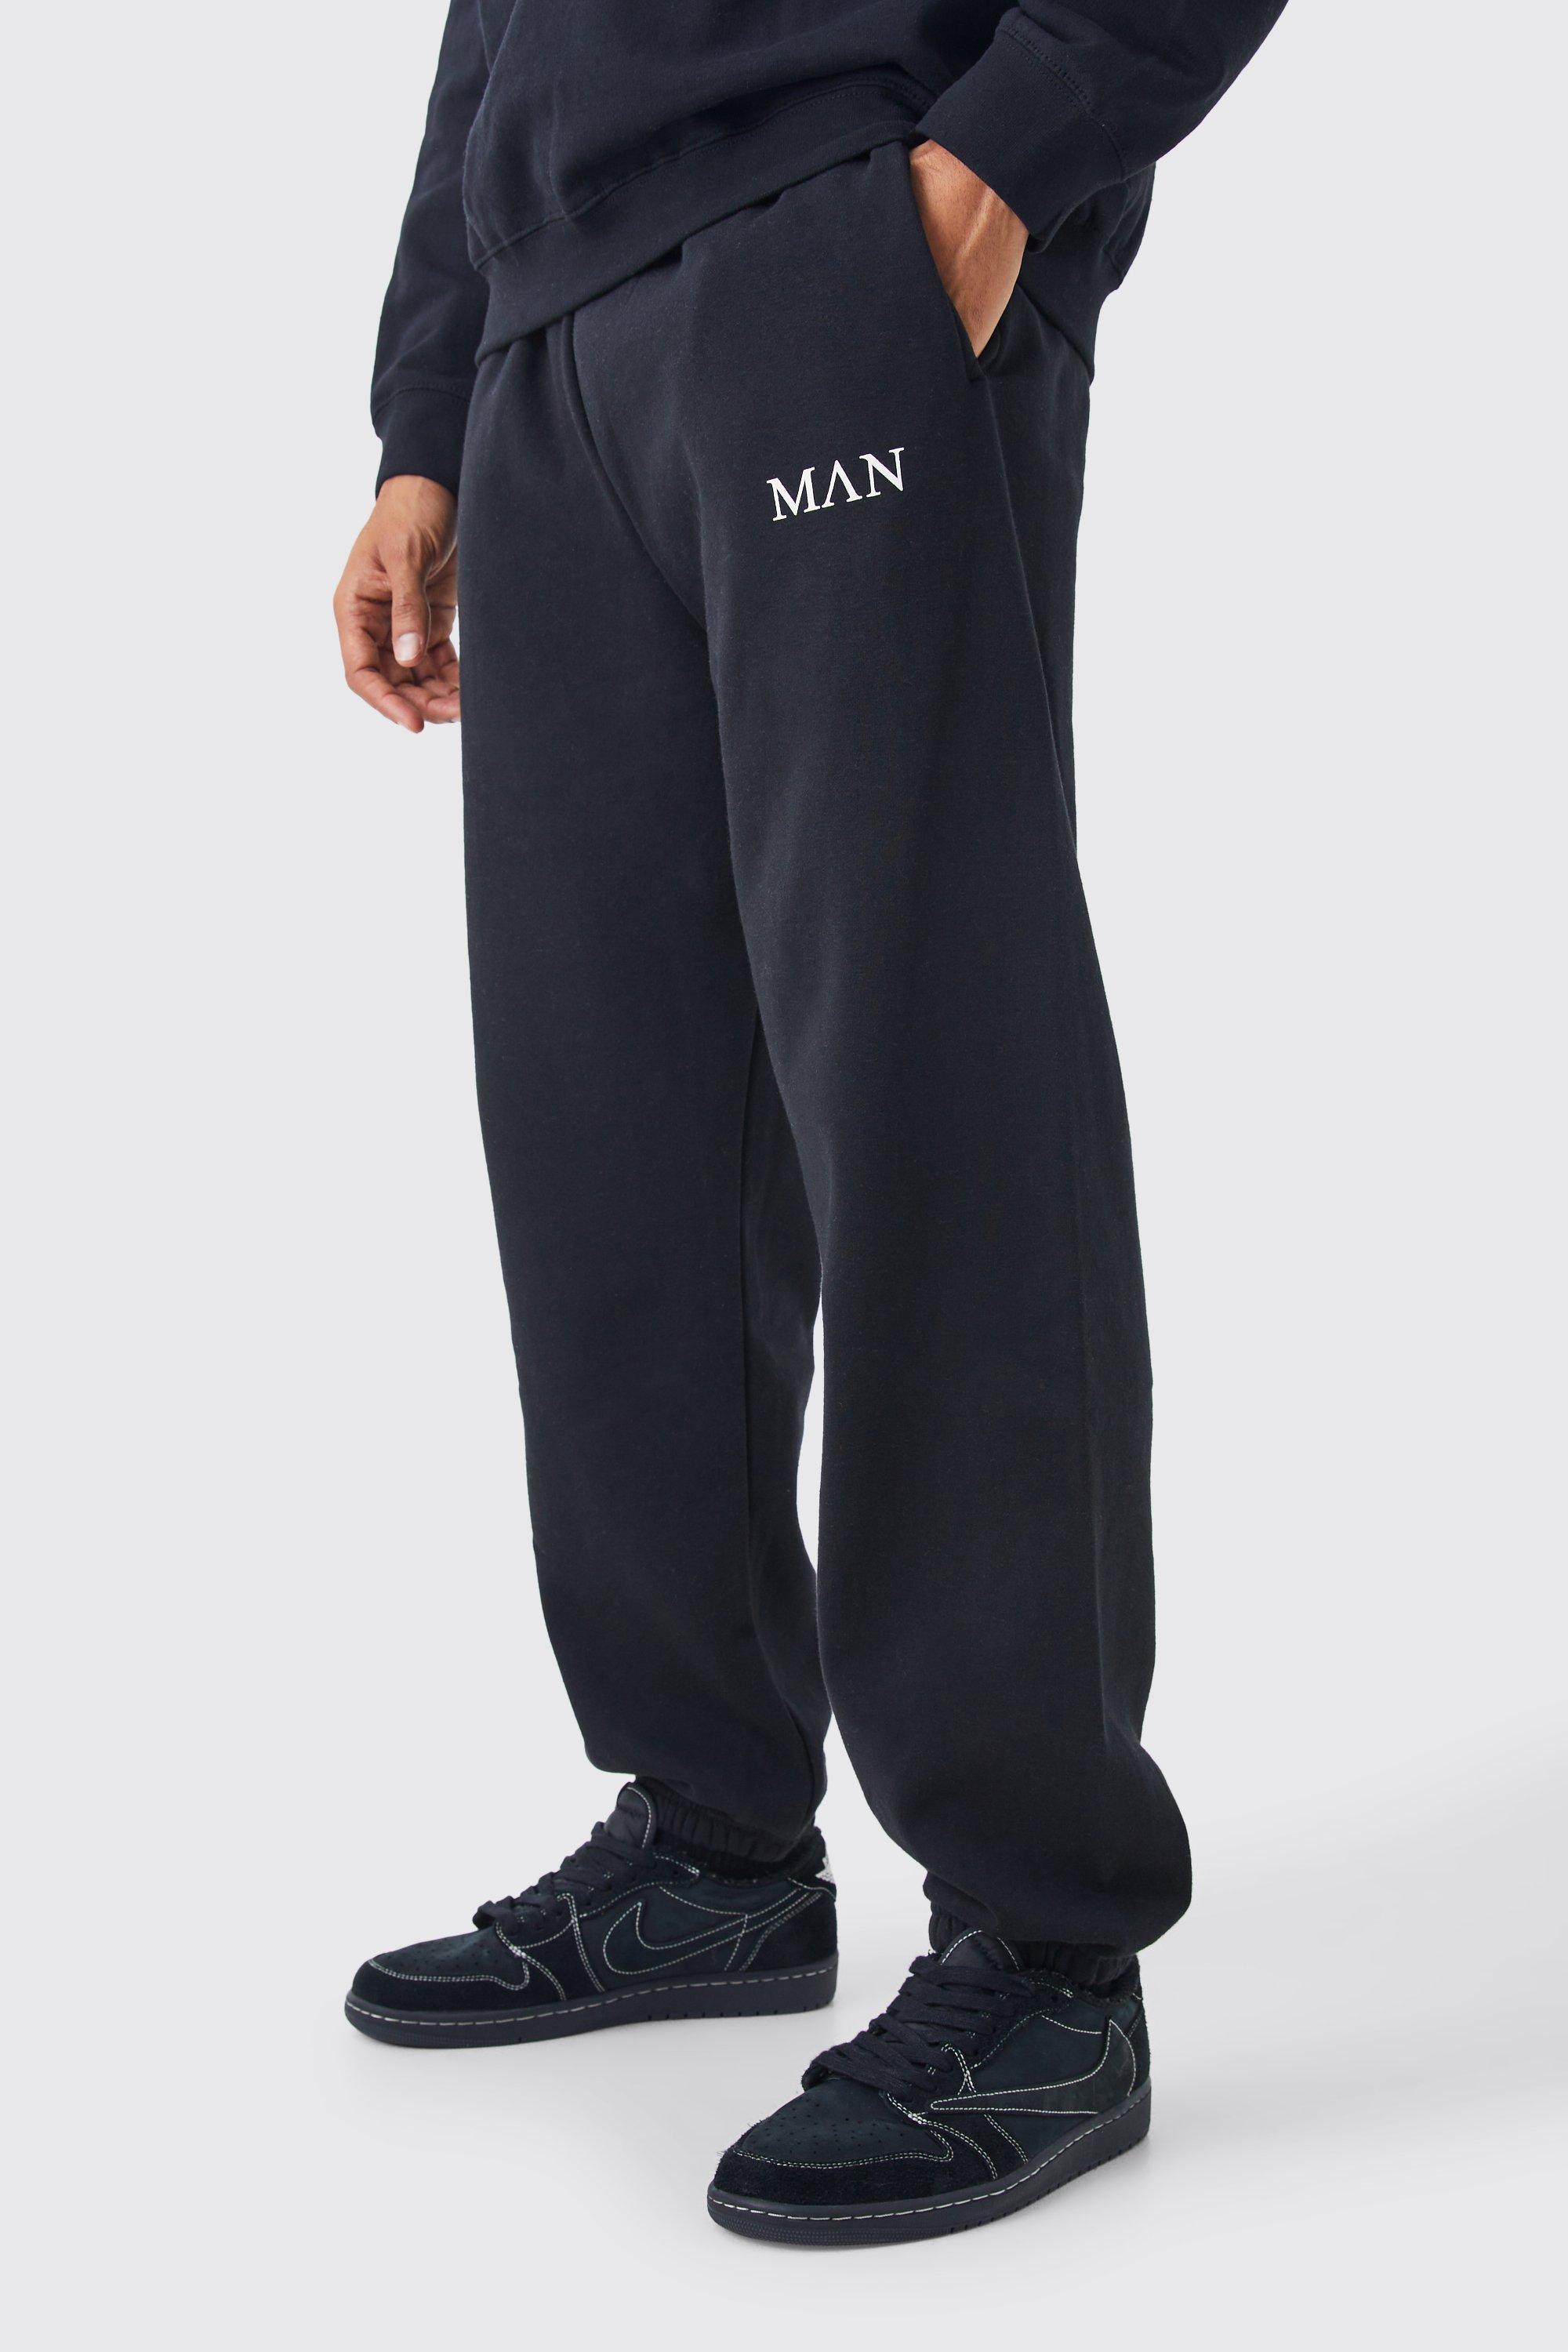 men's man roman oversized joggers - black - s, black